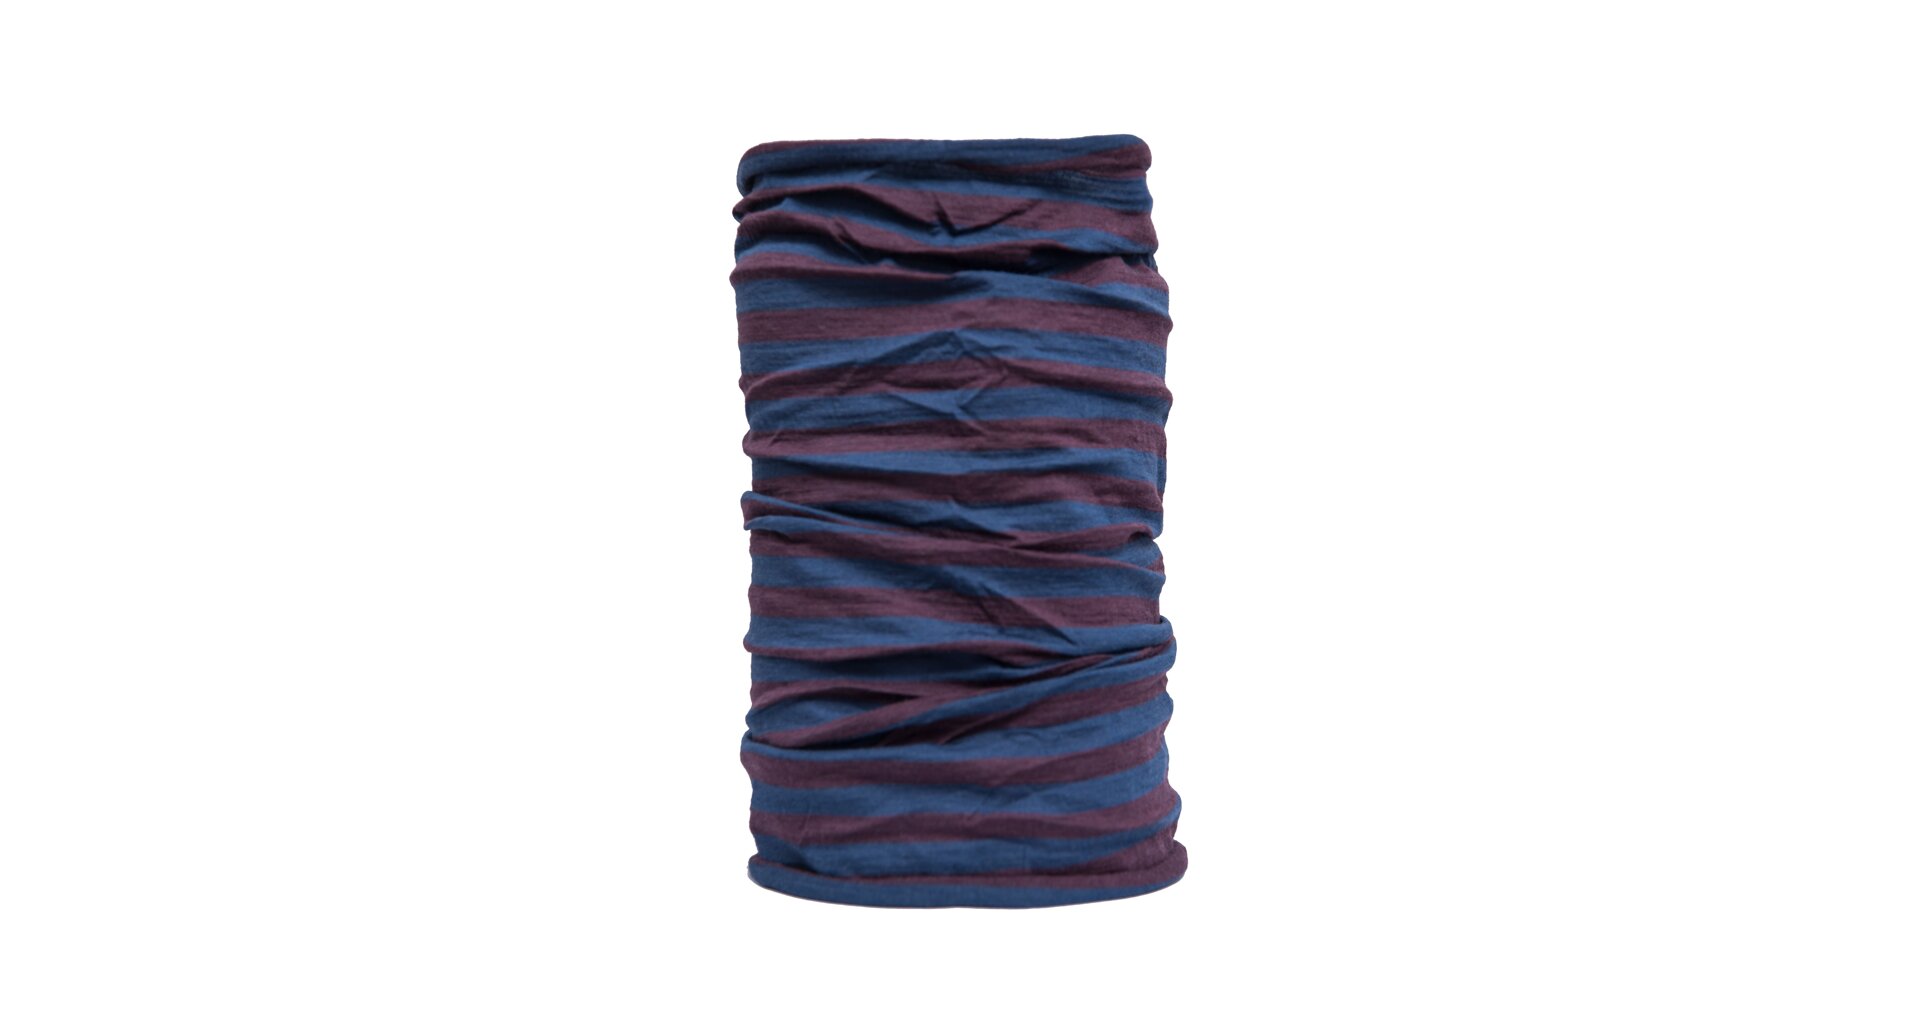 SENSOR TUBE MERINO AIR šátek multifunkční modrá/vínová pruhy